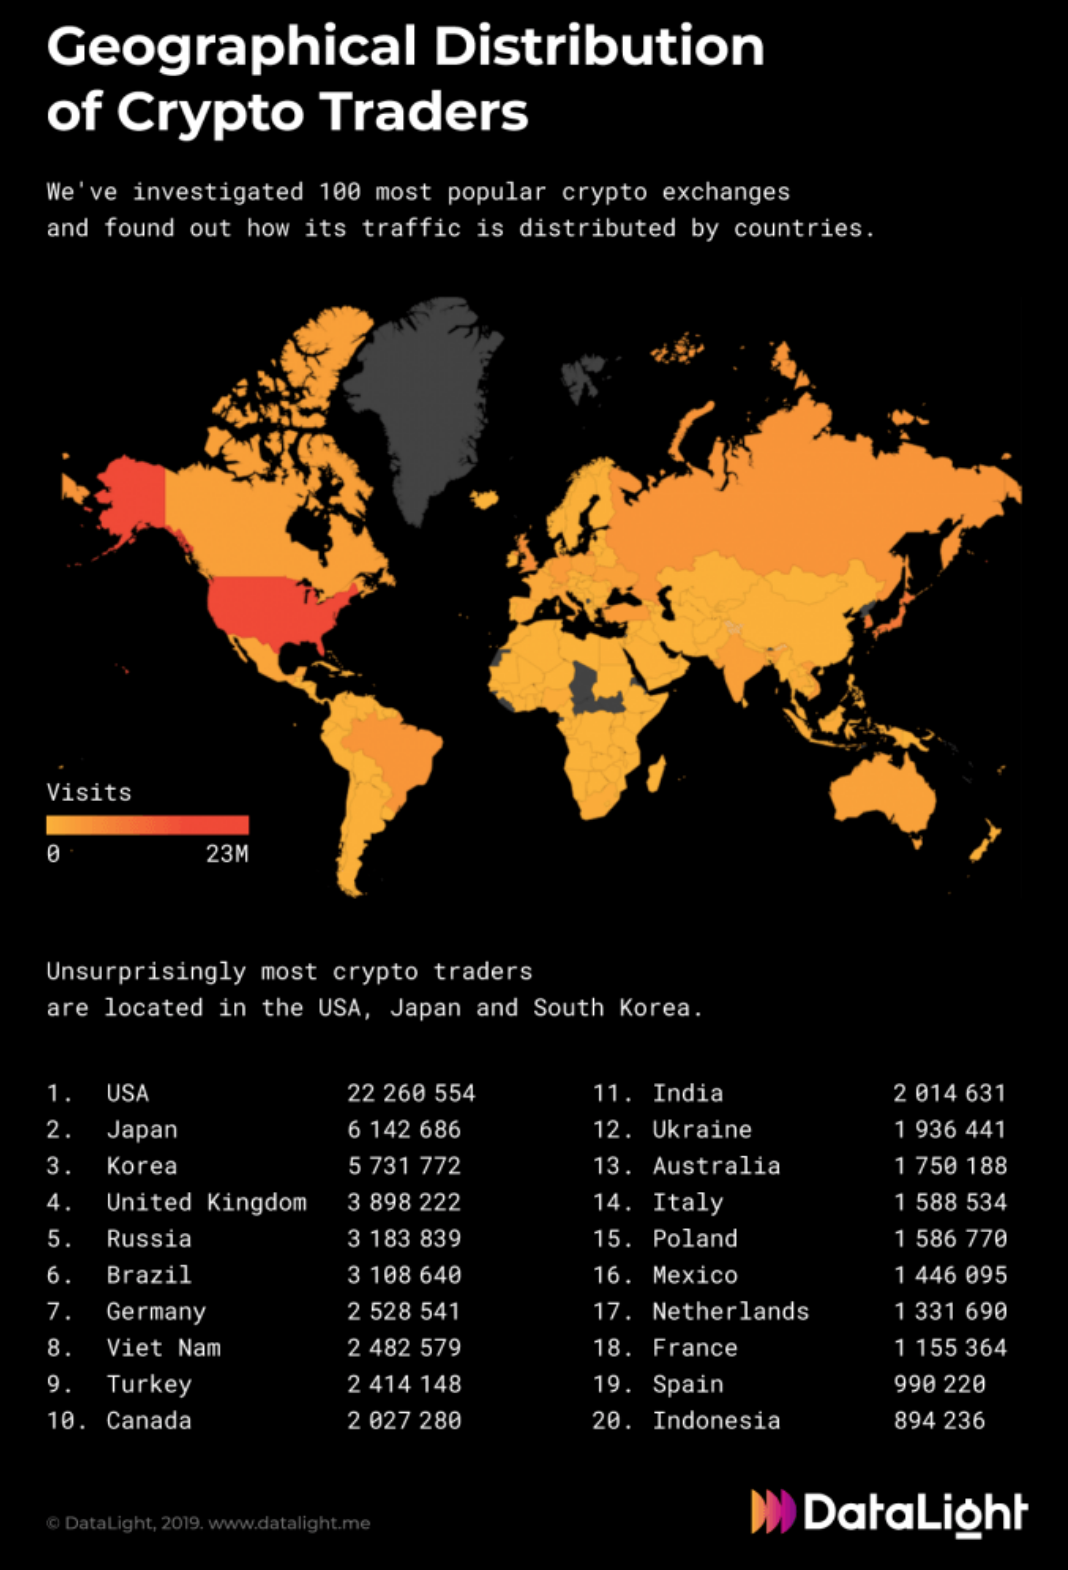 kripto para ticareti Kripto para ticareti en fazla hangi ülkede gerçekleşiyor?